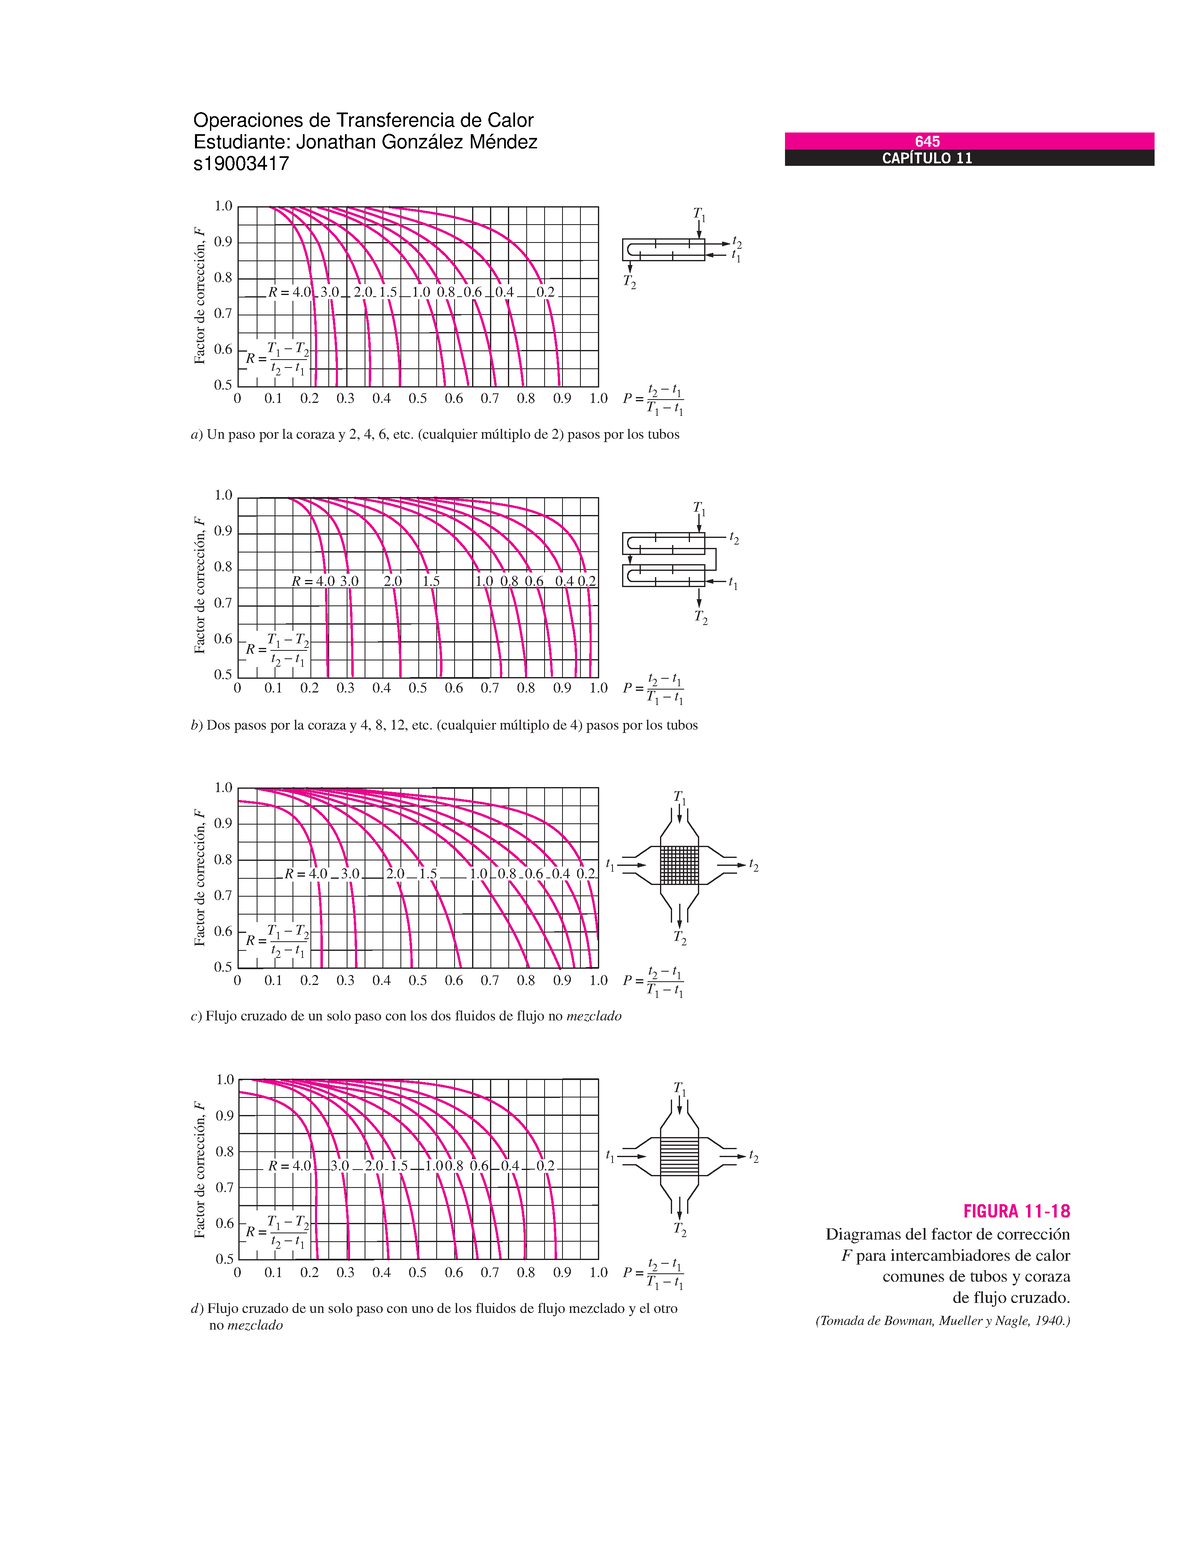 Dtml Factor Correccion En Intercambiadores De Calor Diagramas Del Factor De Corrección F Para 8259